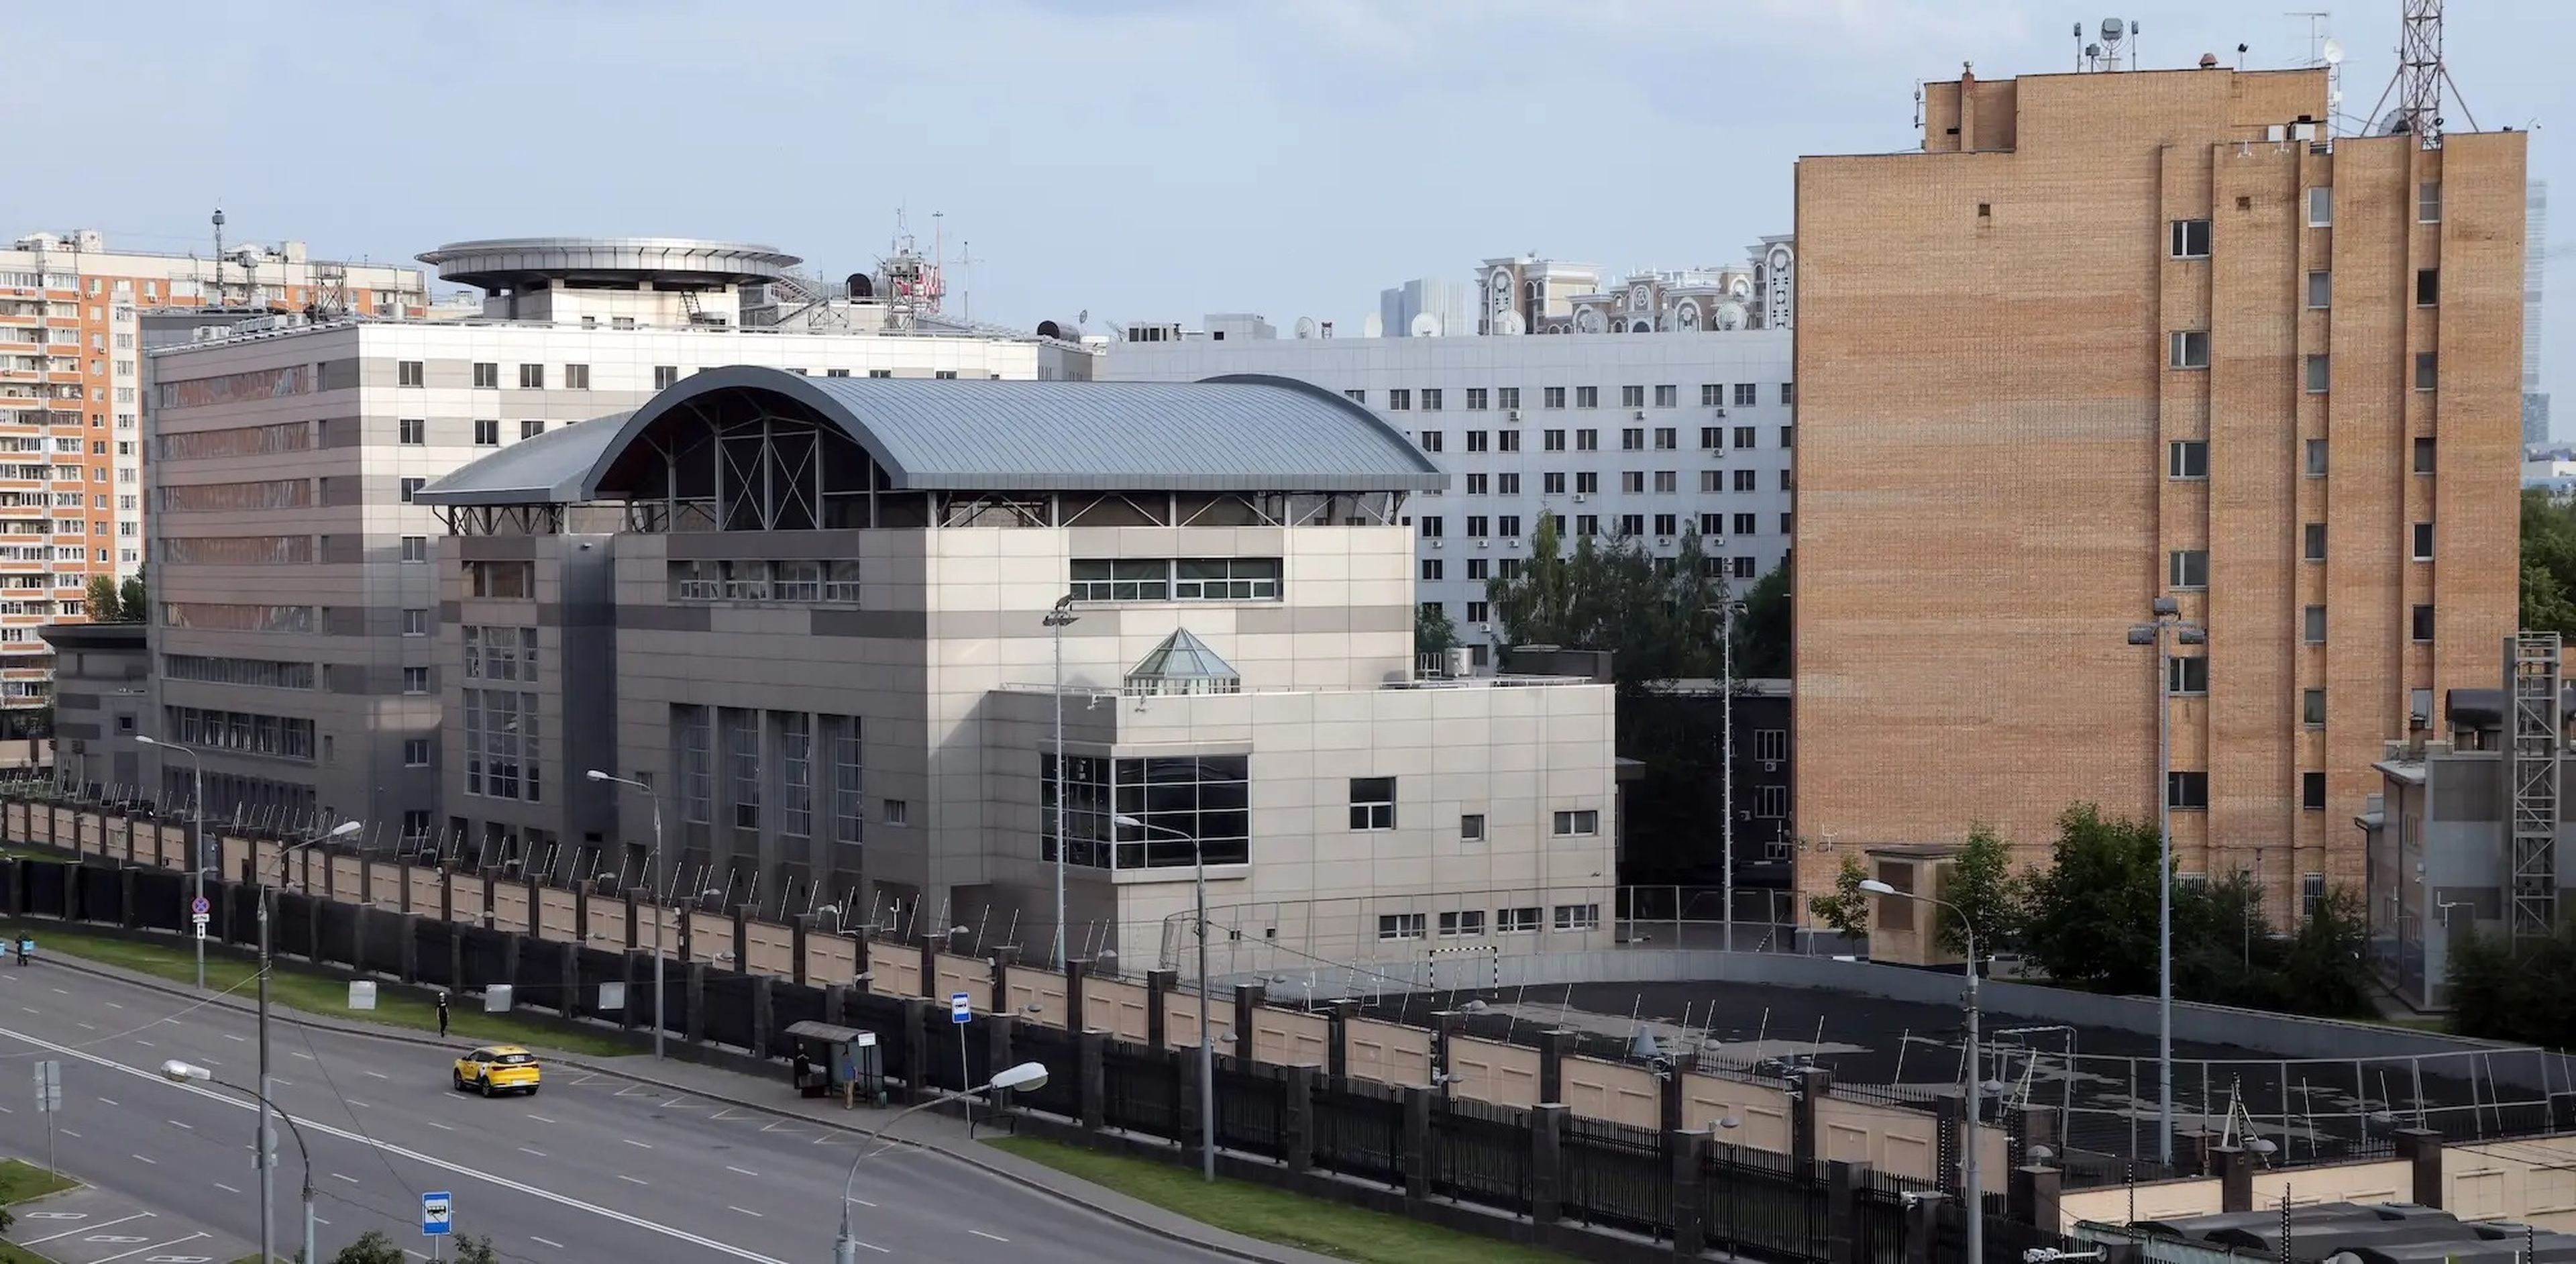 Vista aérea del edificio de la Dirección General del Estado Mayor de las Fuerzas Armadas, también conocido como GRU, en Moscú, Rusia.